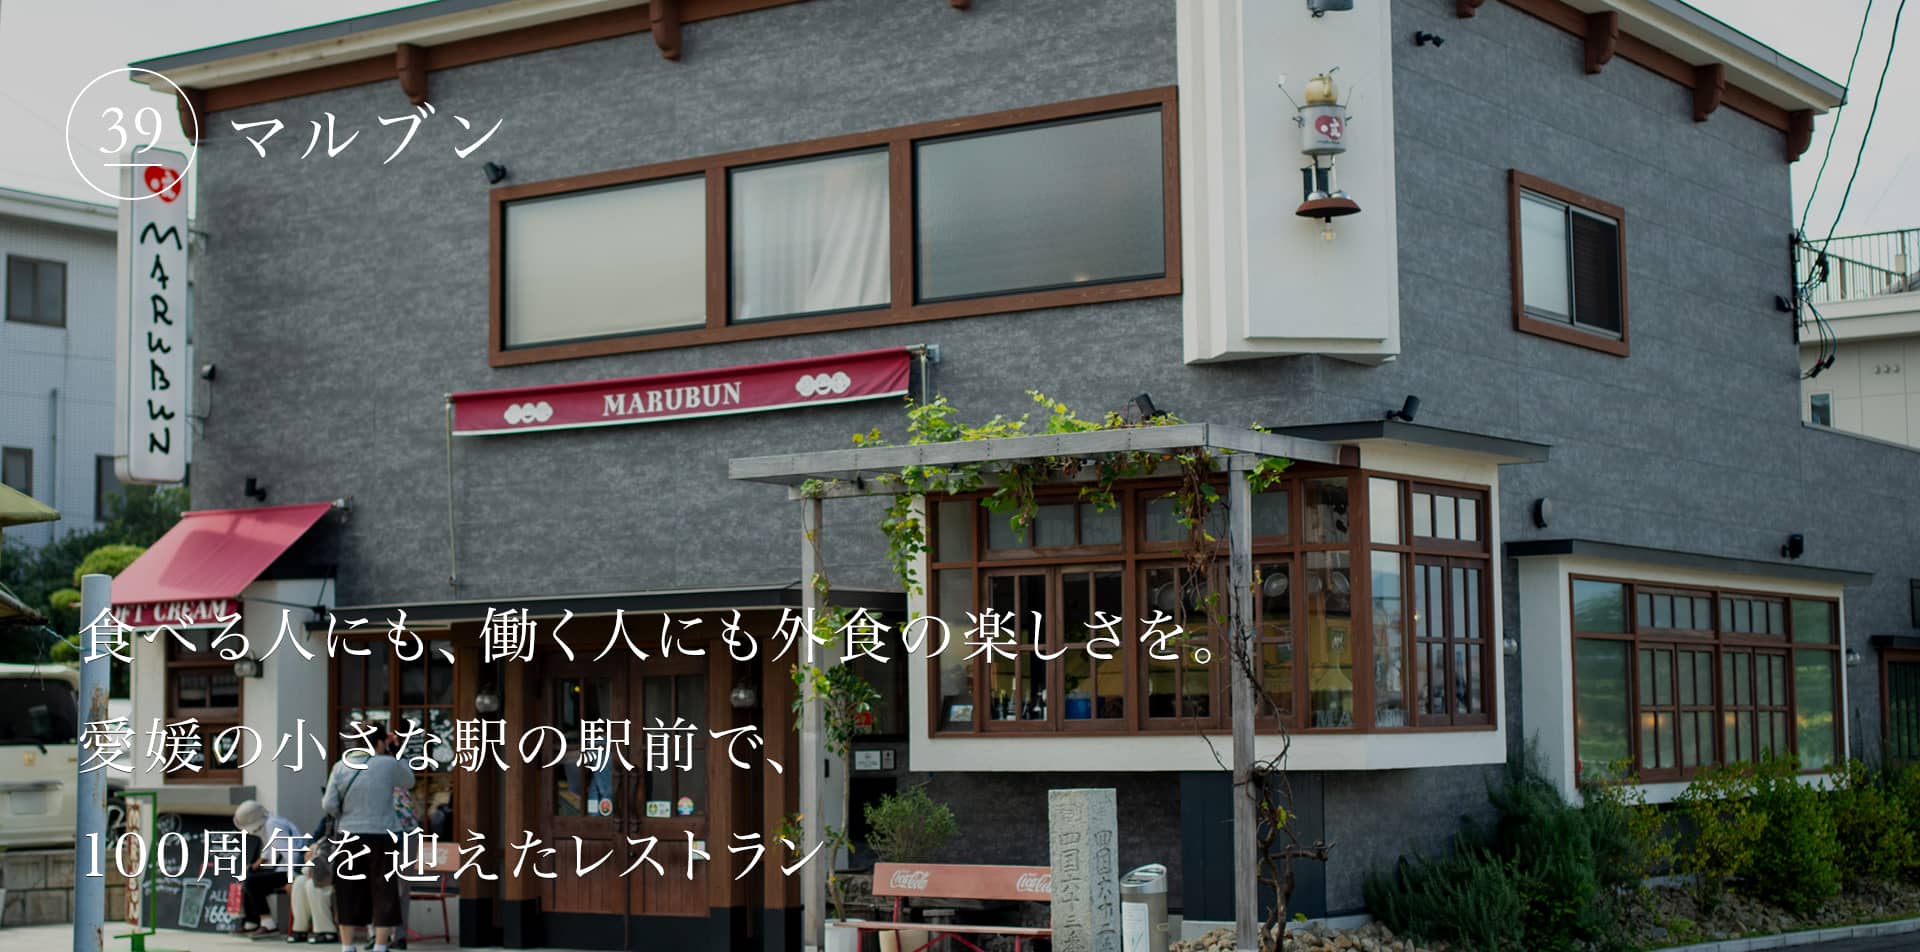 食べる人にも、働く人にも外食の楽しさを。愛媛の小さな駅の駅前で、100周年を迎えたレストラン